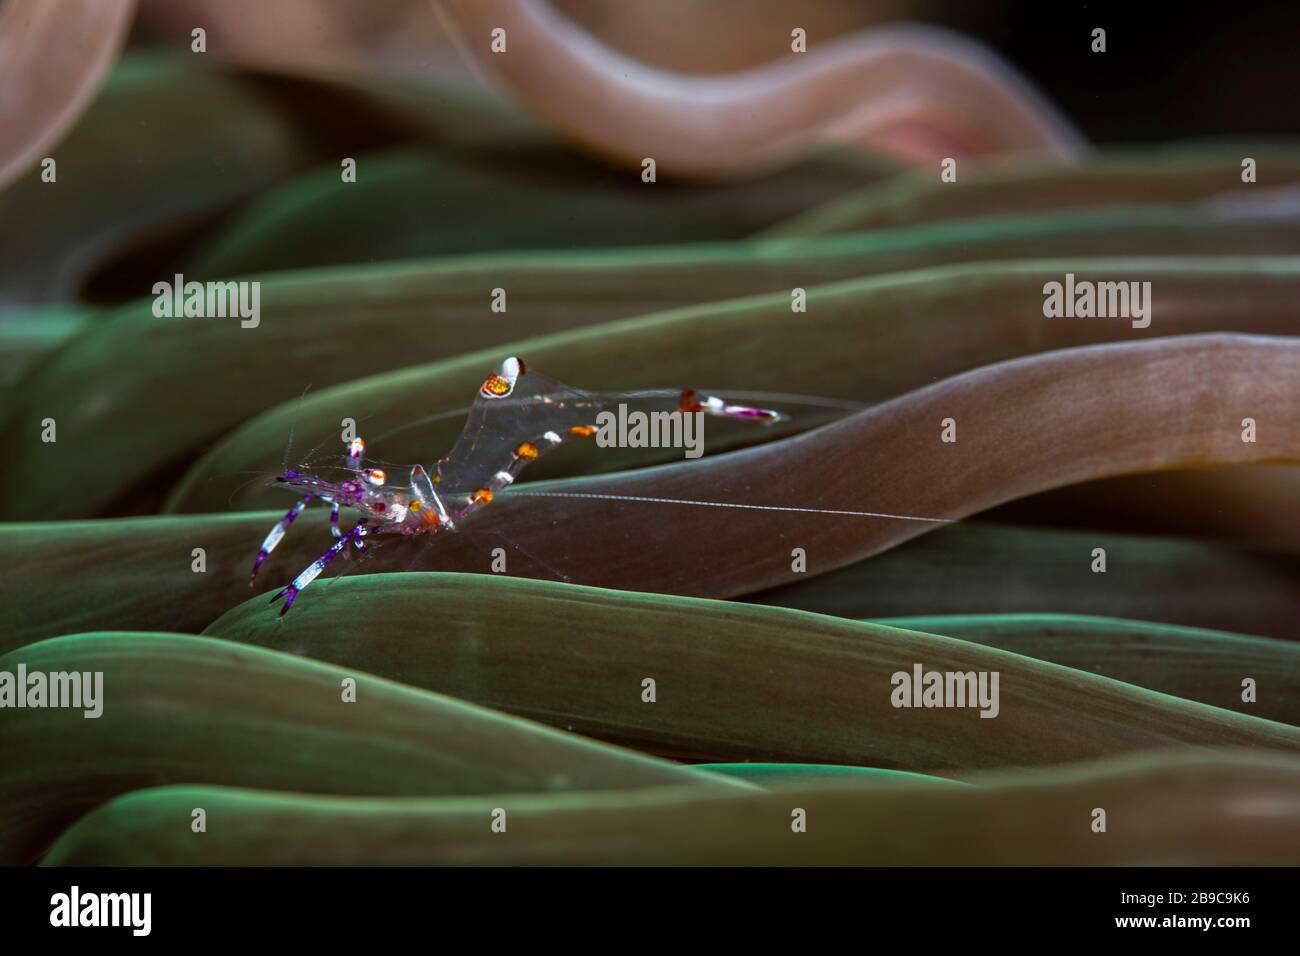 Un gambero anemone vive tra i tentacoli di un anemone. Foto Stock